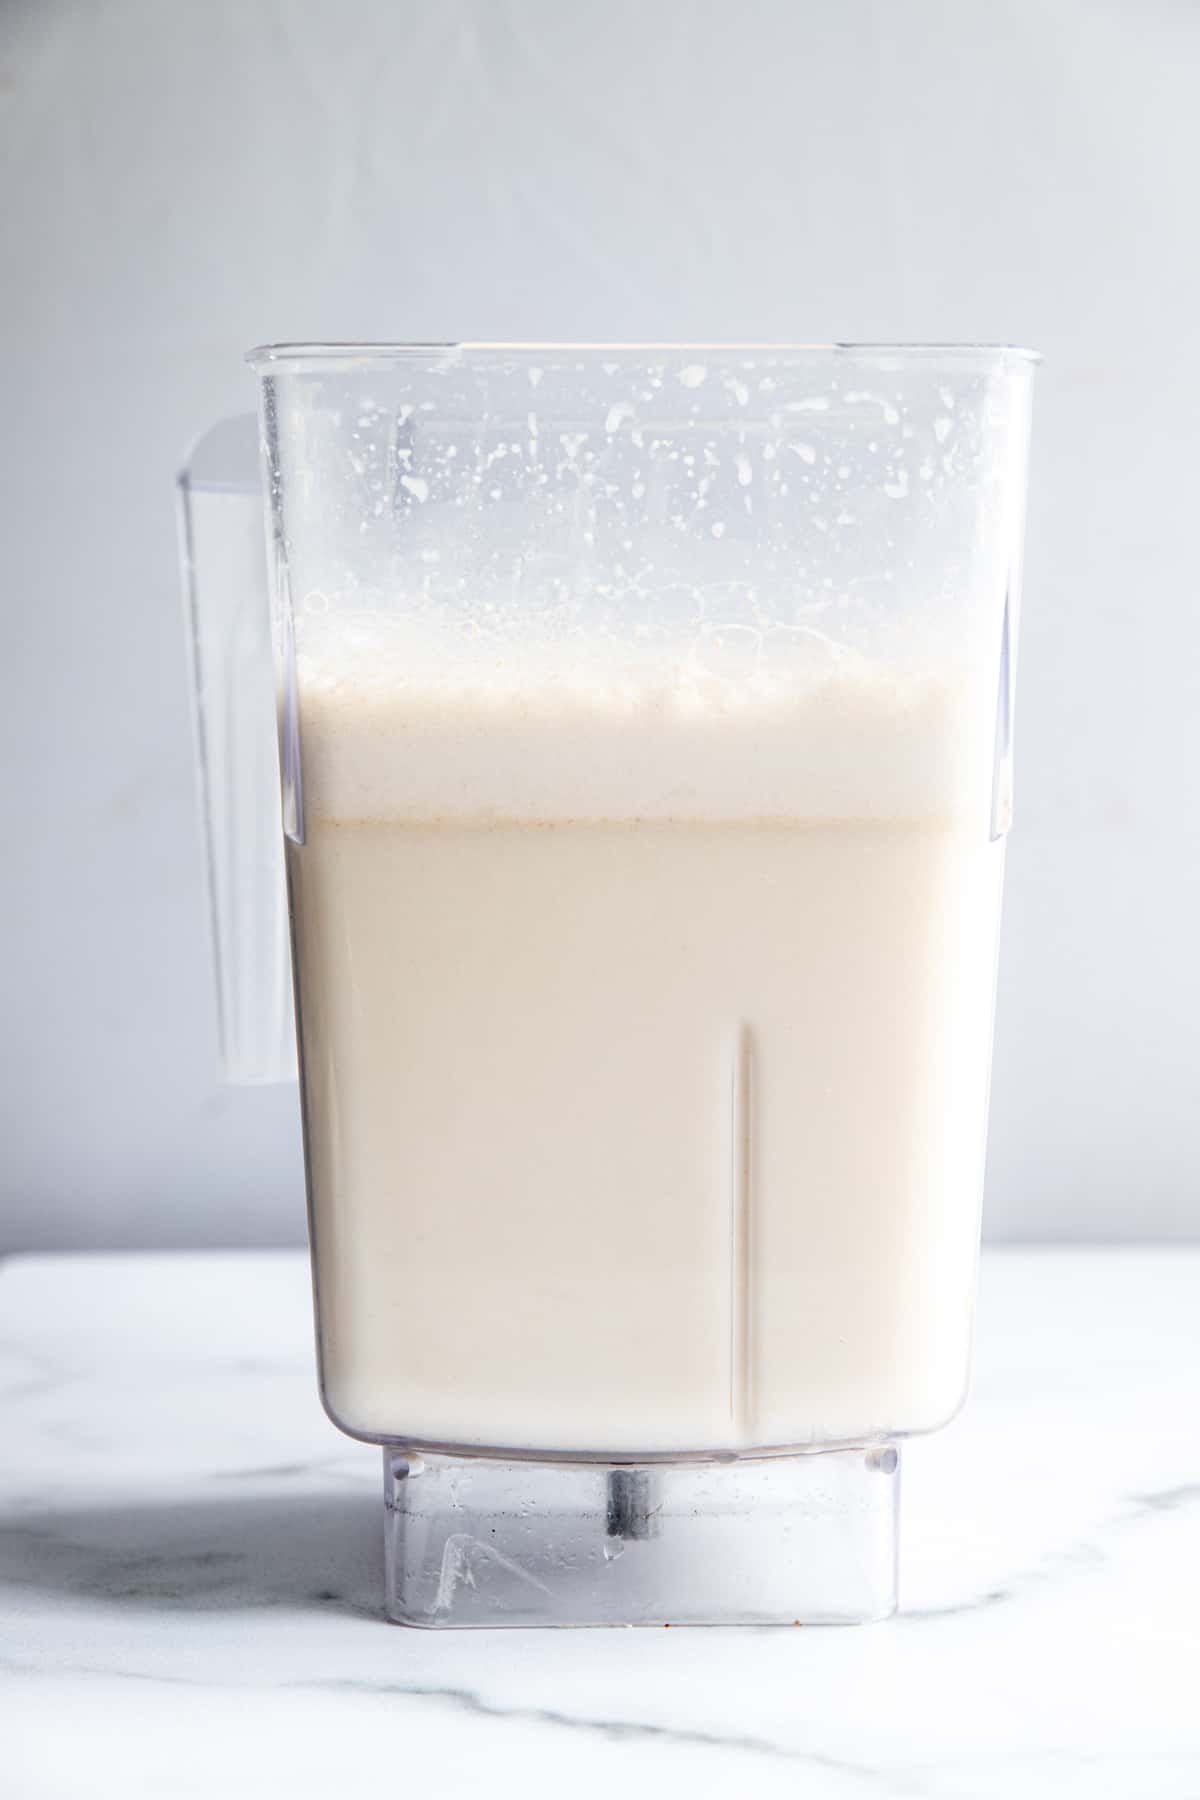 oatmilk in a blender